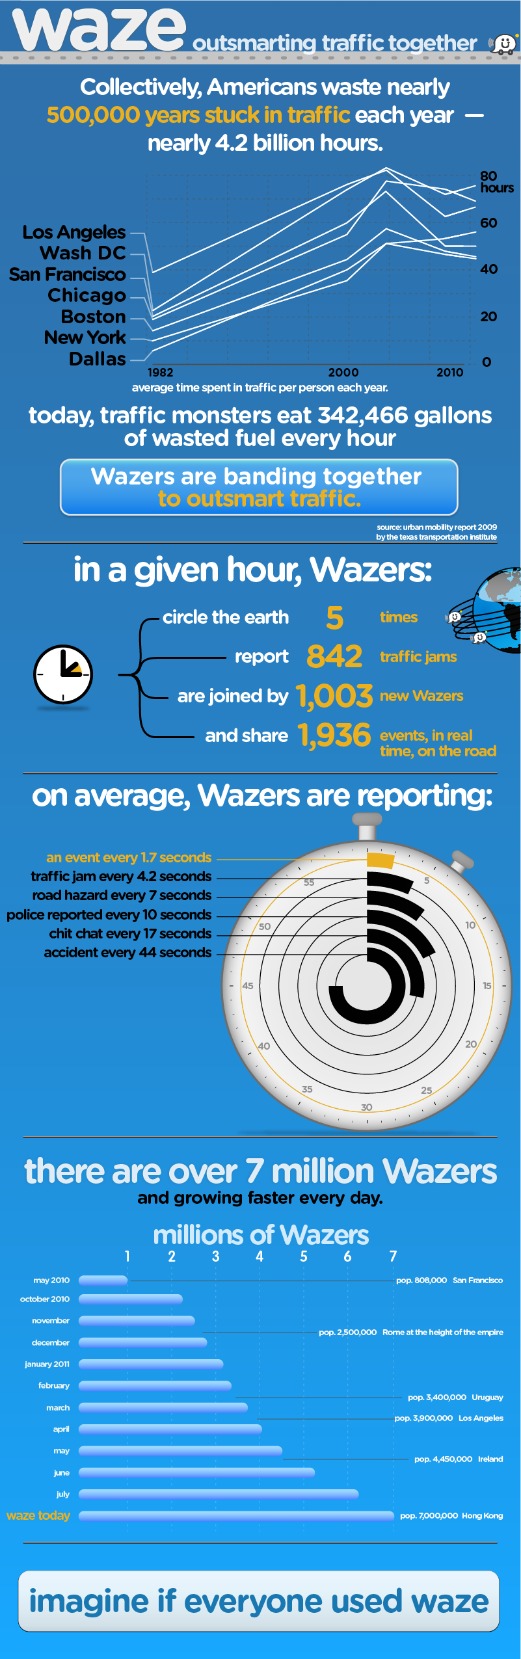 info-waze